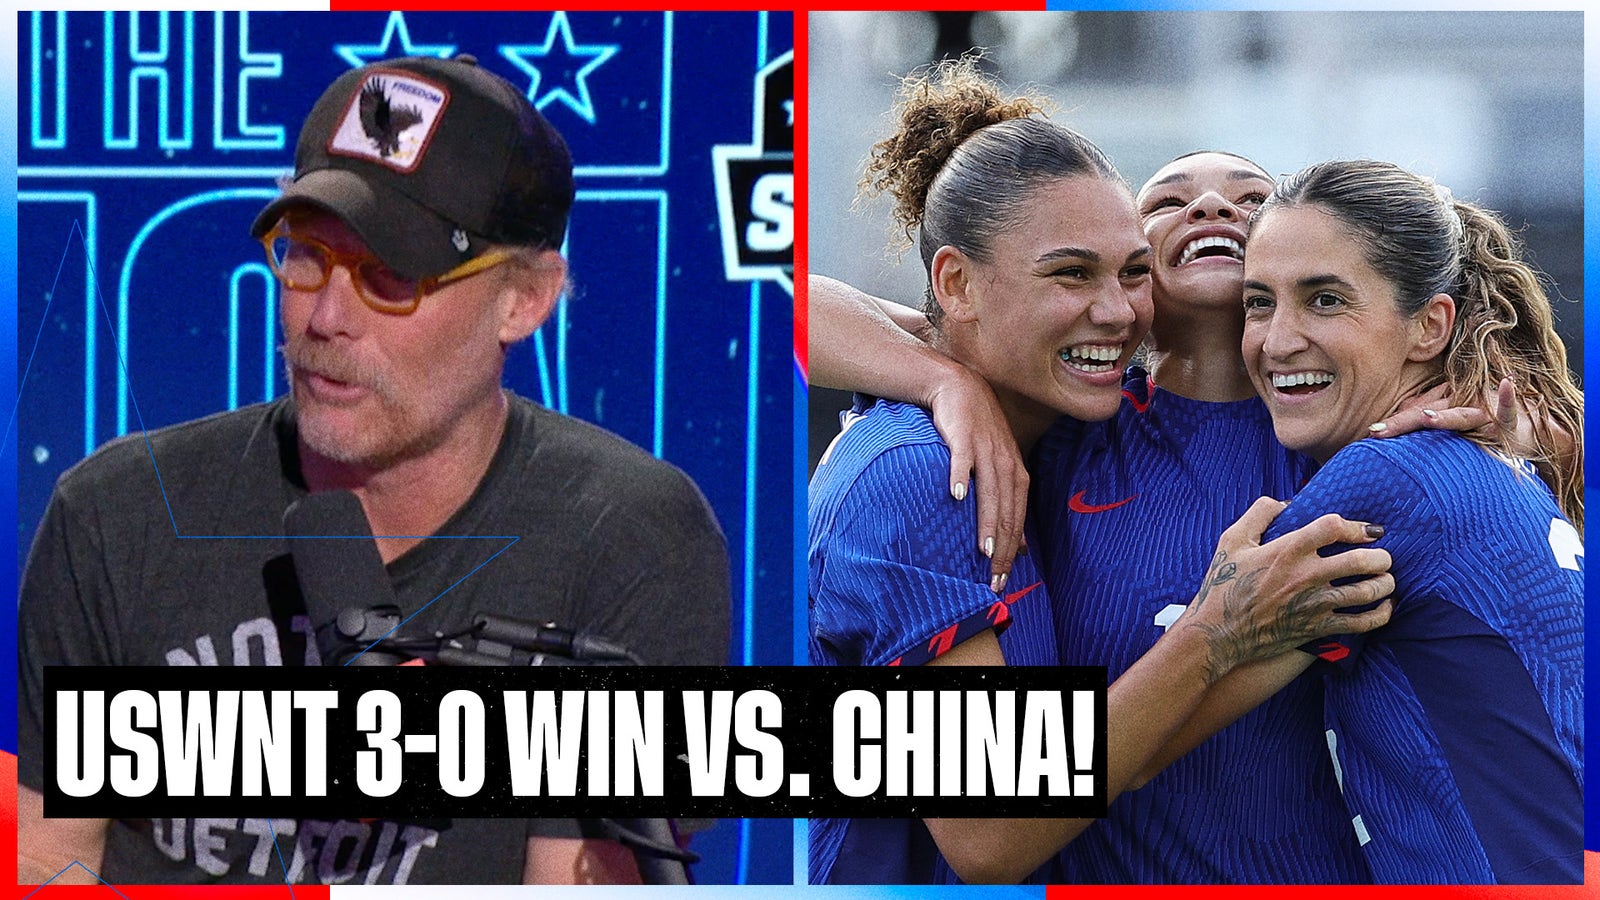 USWNT beat China 3-0, as the Emma Hayes era begins!